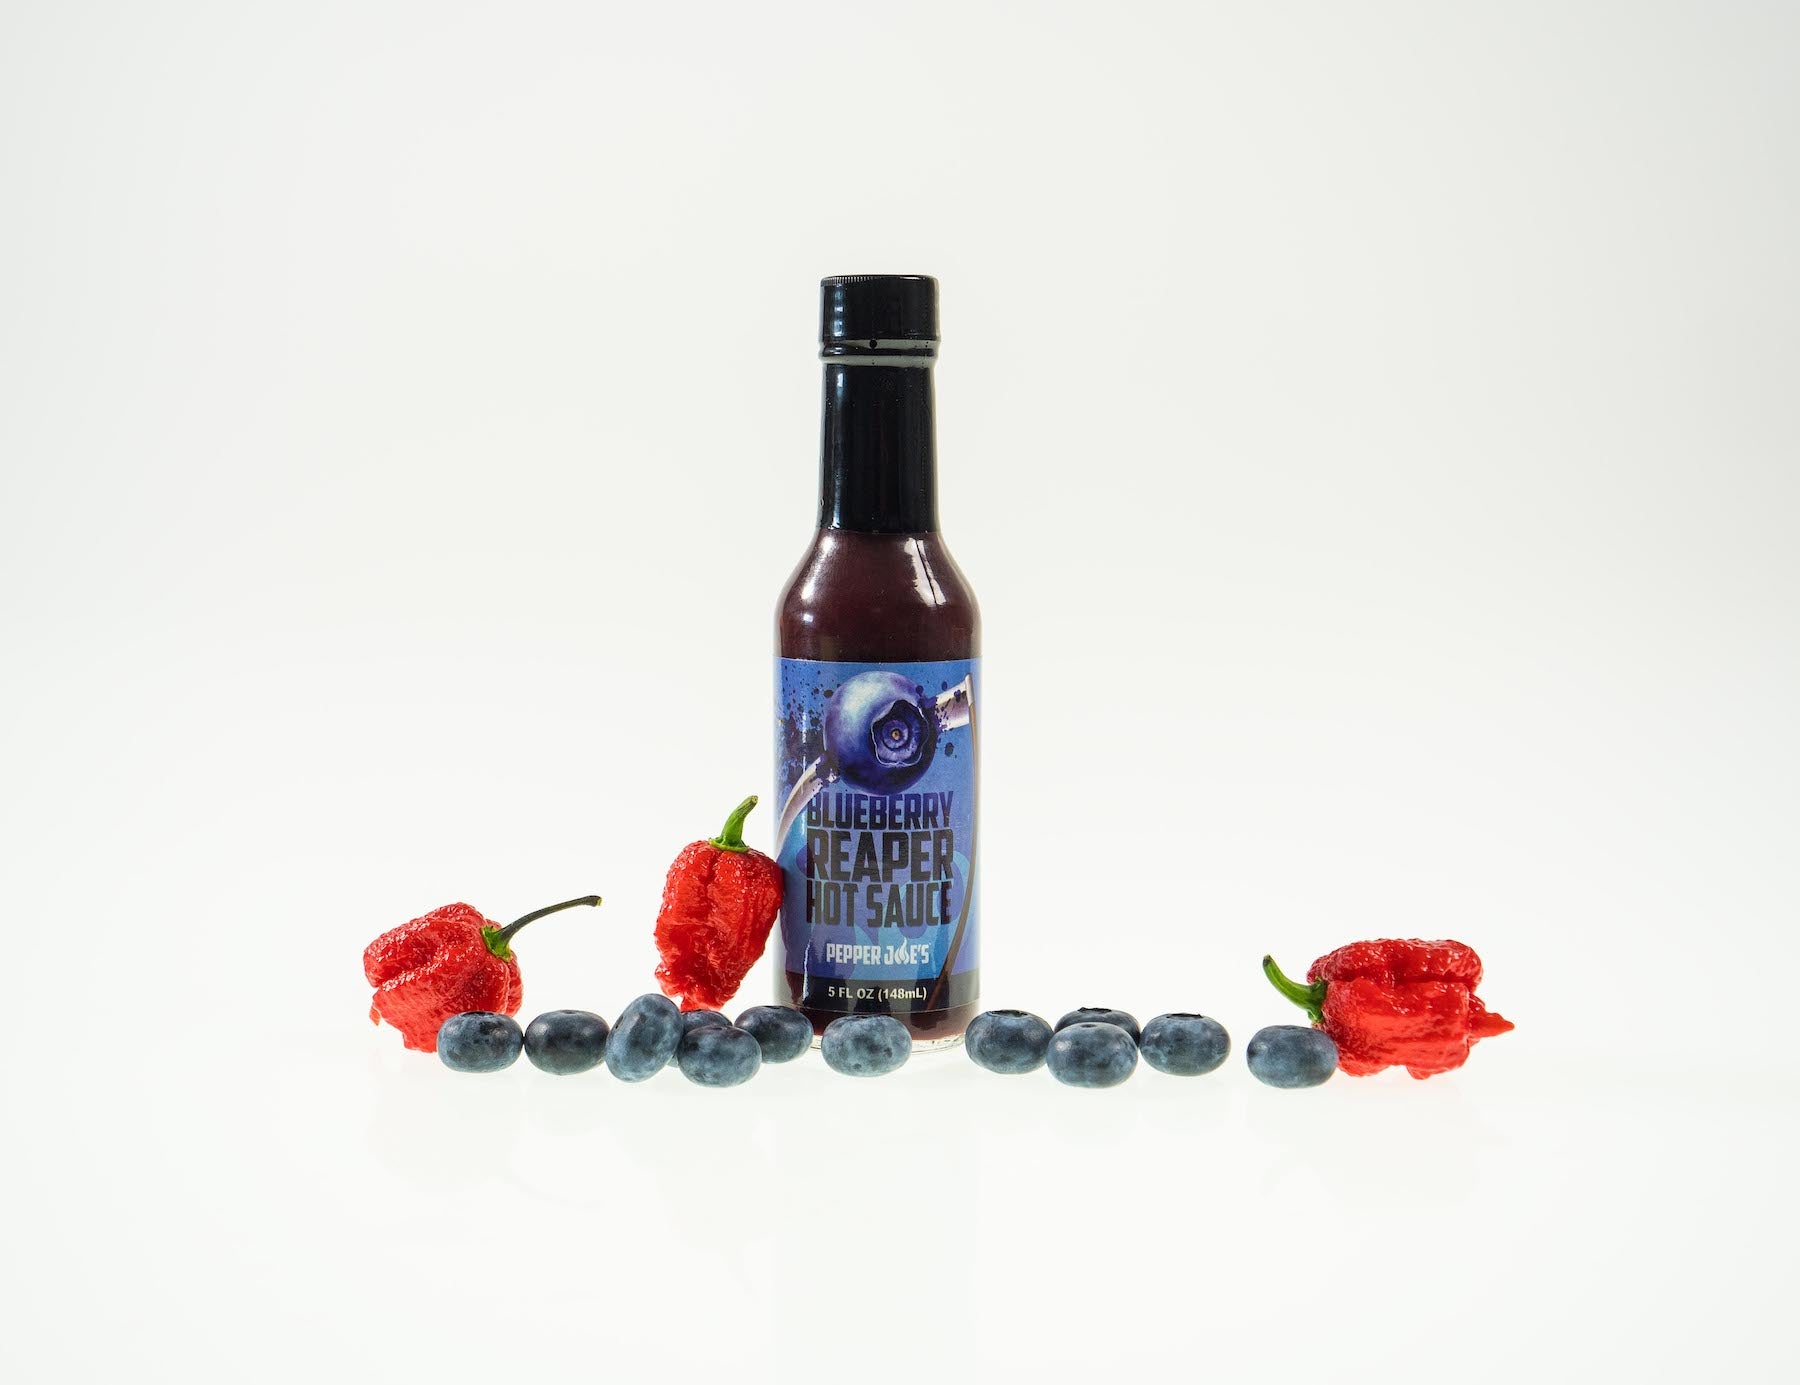 Pepper Joe's Carolina Reaper hot sauce gift set - Blueberry Reaper hot sauce bottle with blueberries around sauce